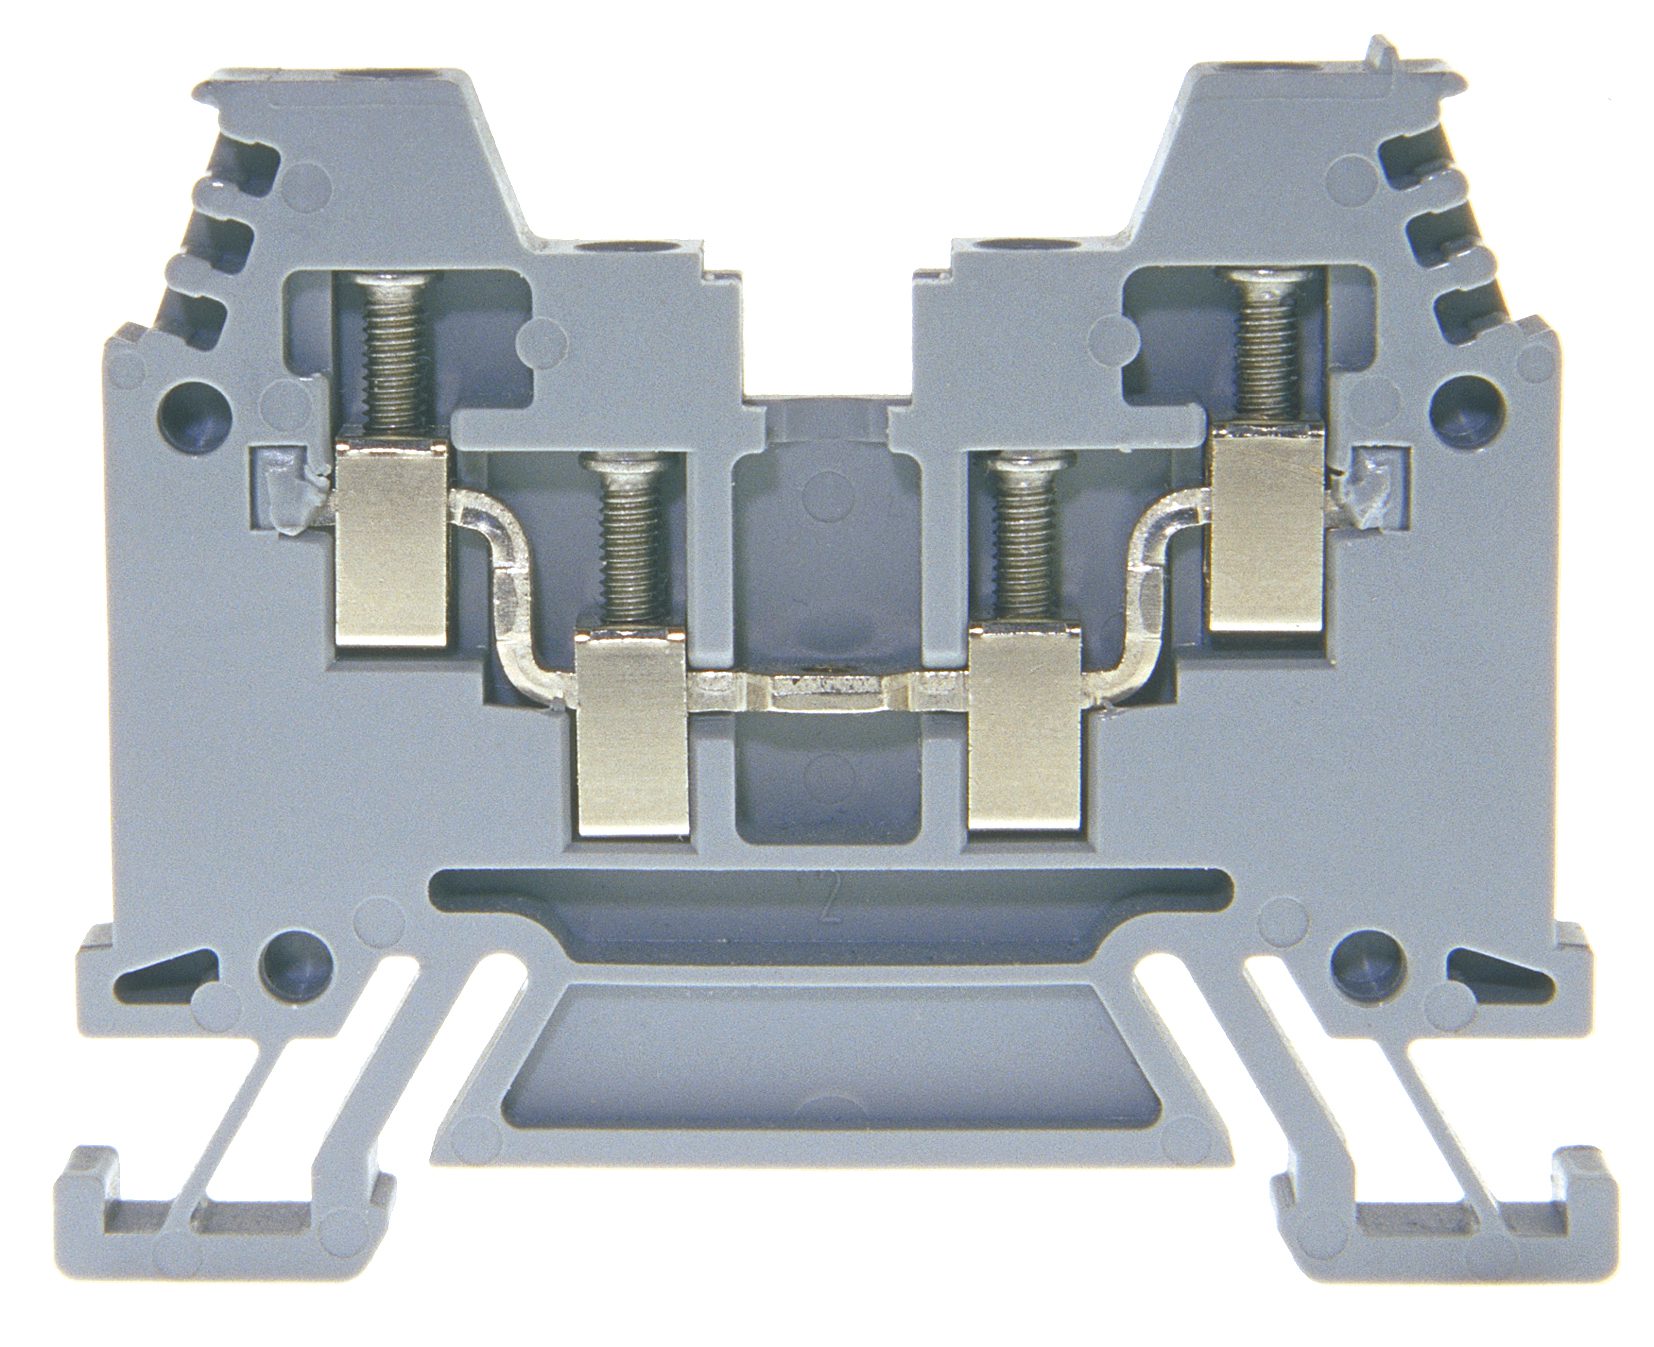 X aansluitblok DIN35 2,5mm² grijs